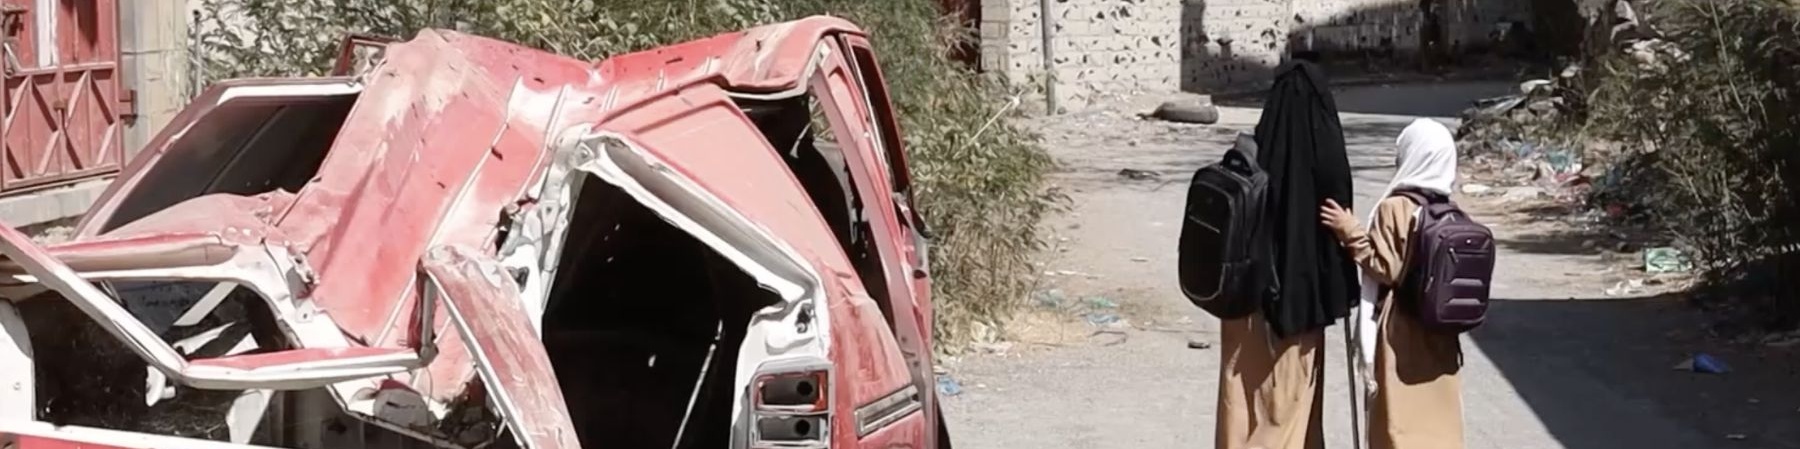 bambine in Yemen che camminano per strada a sinistra macchina distrutta